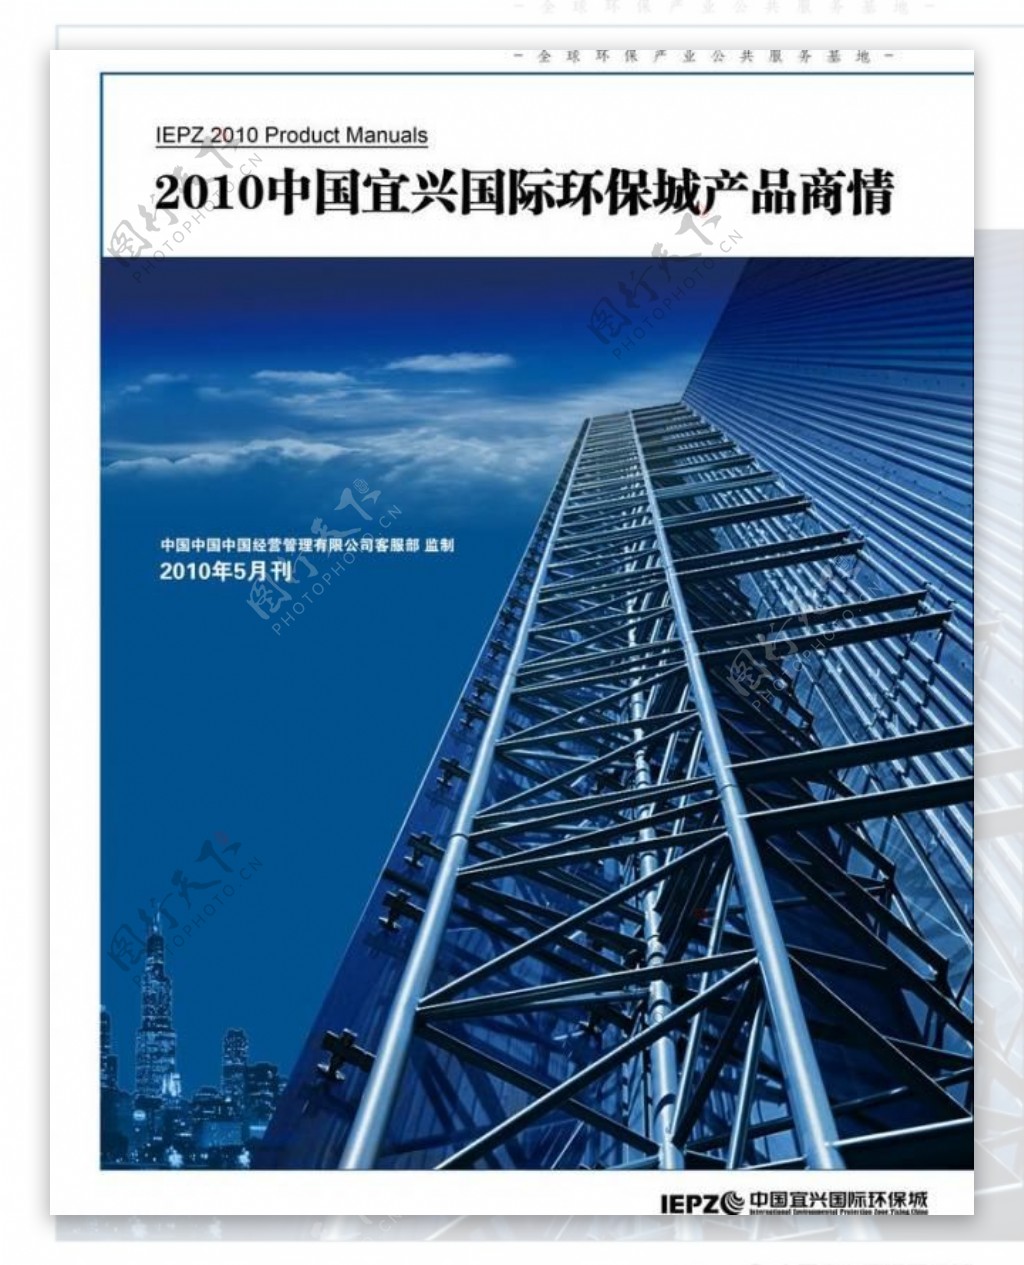 中国宜兴国际环保城产品商情封面图片